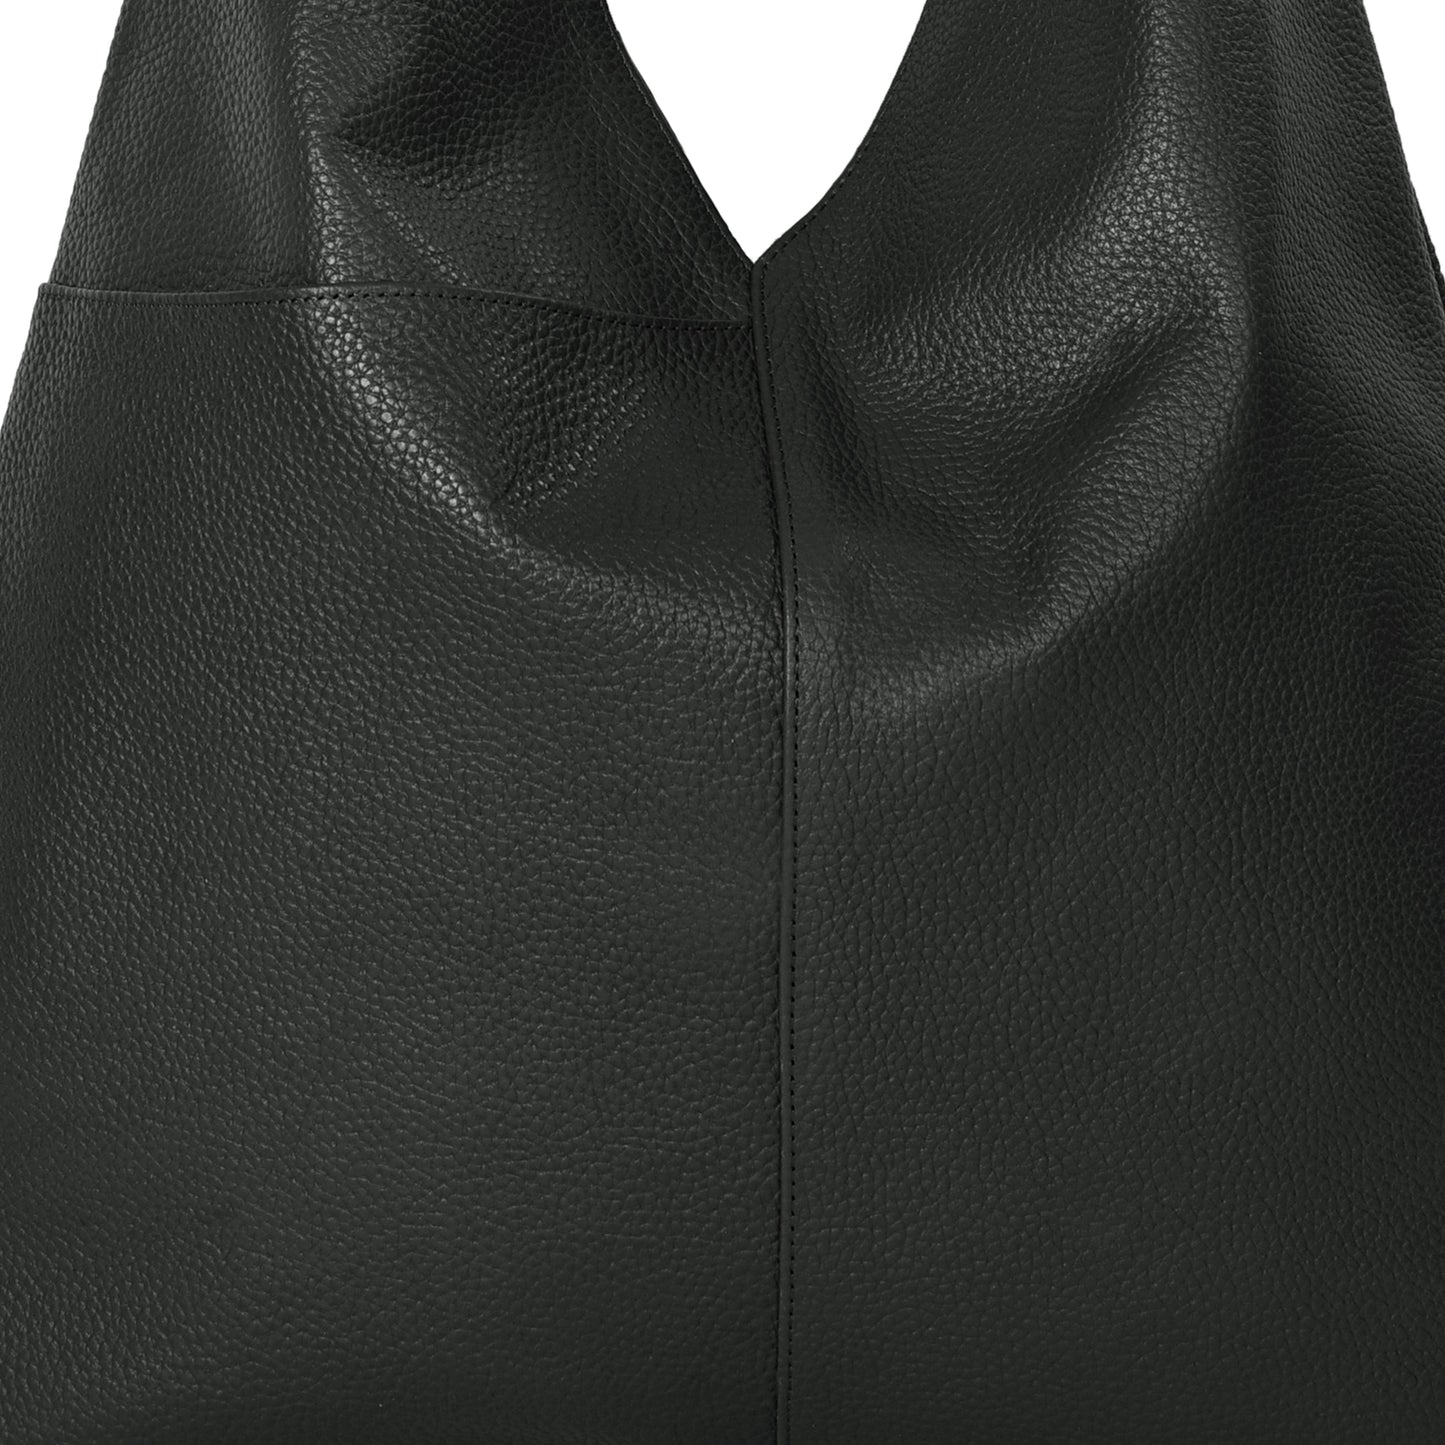 Black Pocket Boho Leather Bag